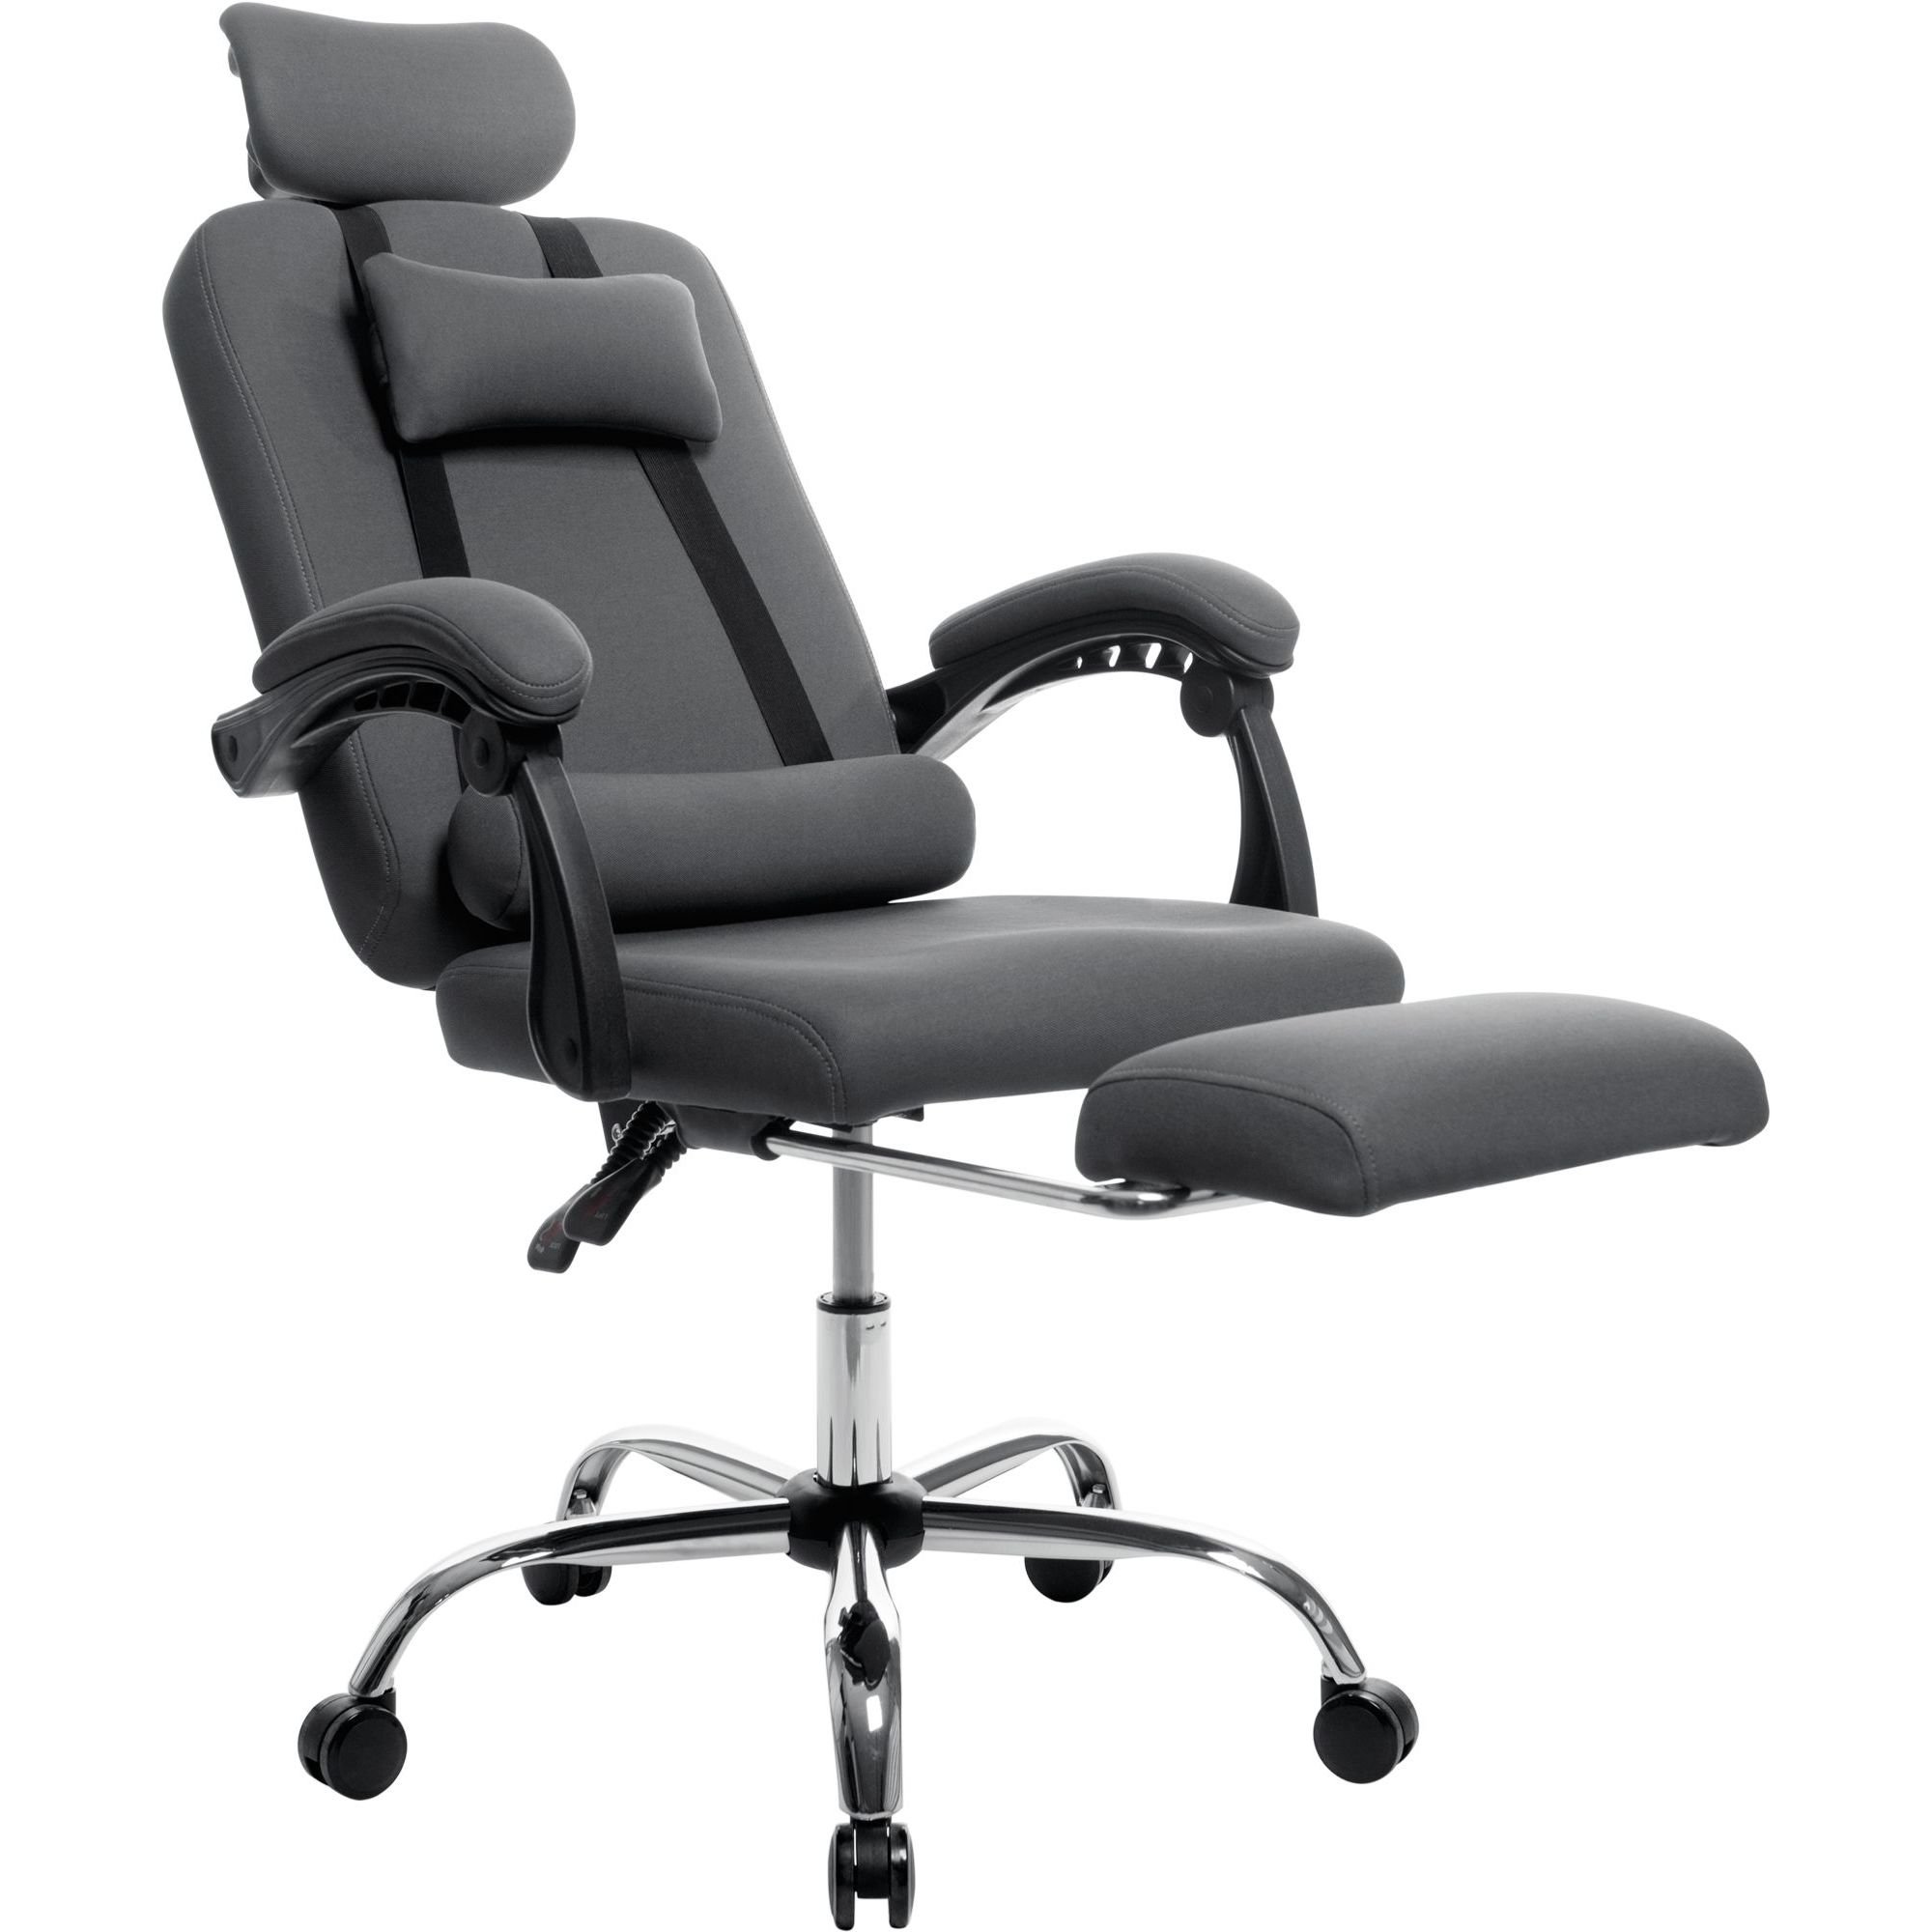 Офисное кресло GT Racer X-8003 Fabric, серое (X-8003 Gray) - фото 5